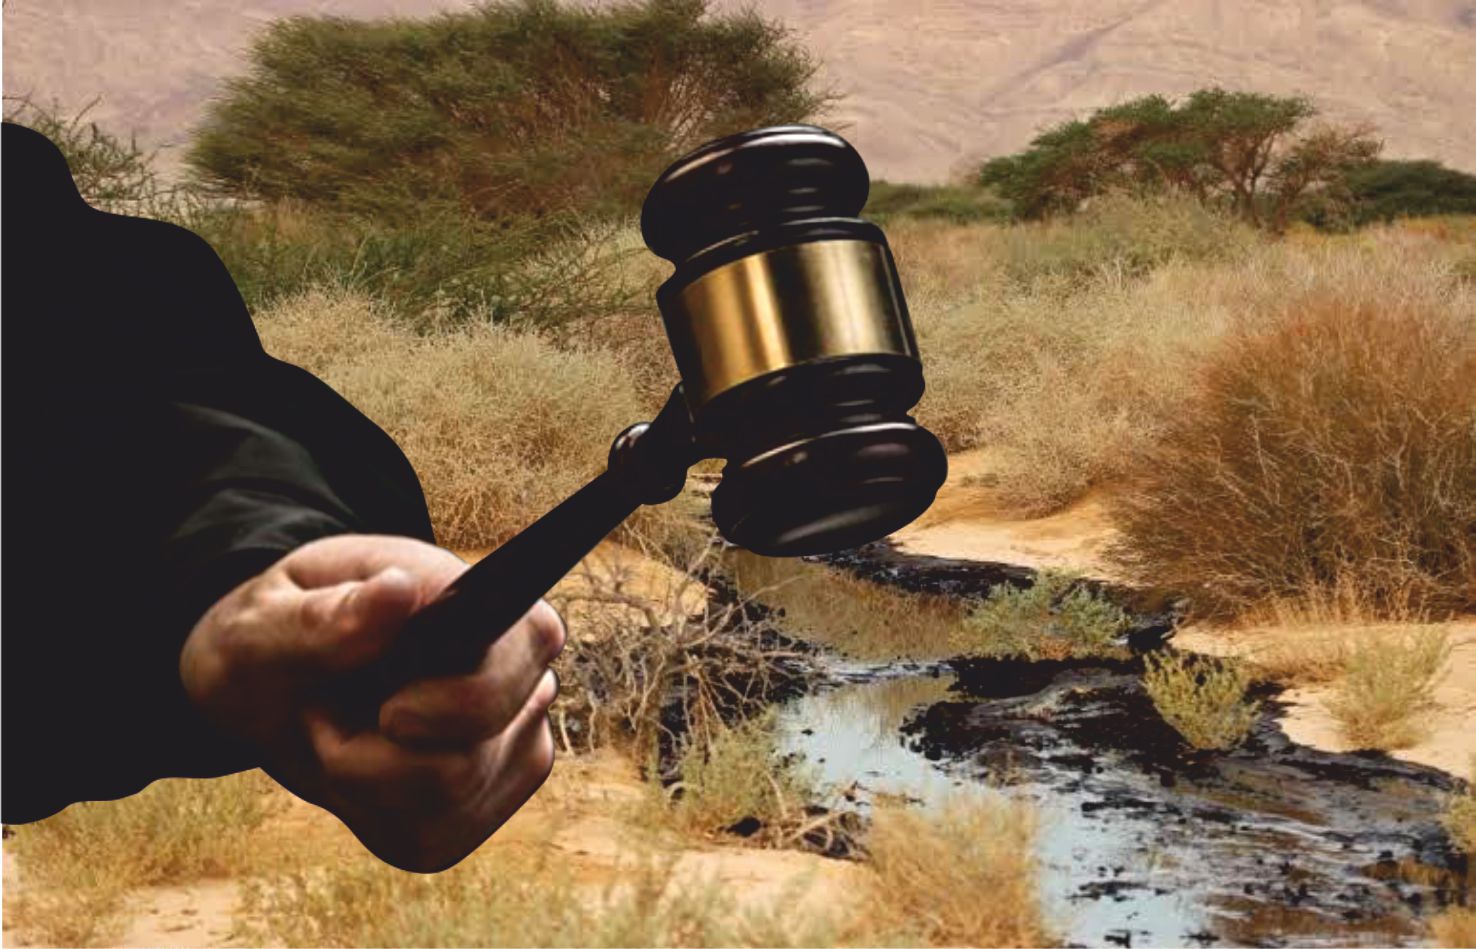 קצא''א תשלם לעורכי הדין  שייצגו מולה באסון עין עברונה  כ-11.5 מיליון שקל